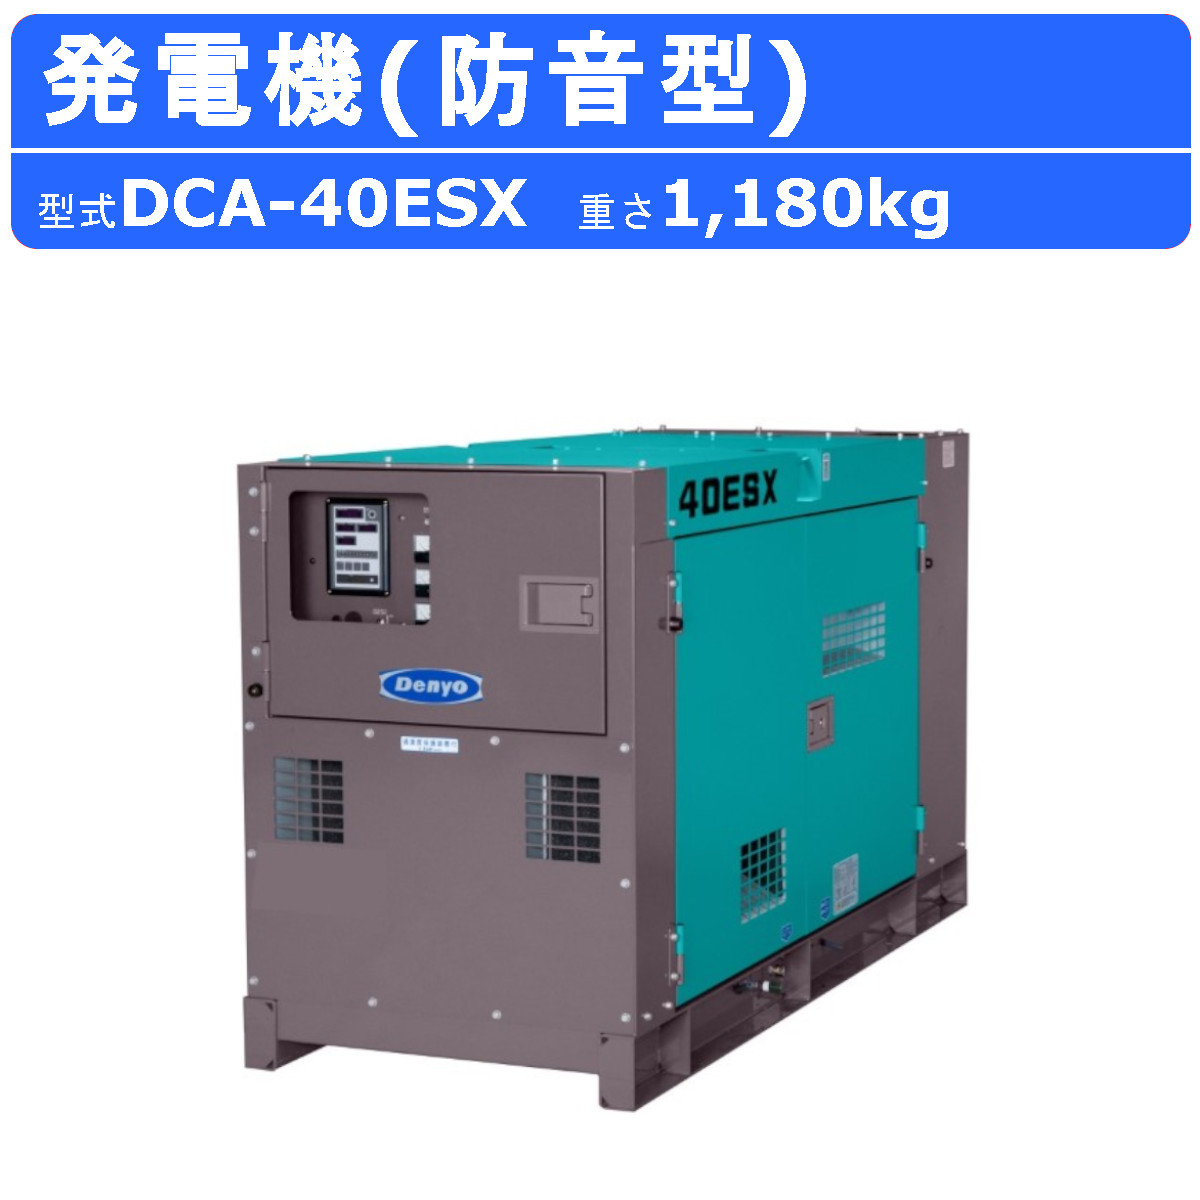 デンヨー 発電機 DCA-40ESX 単相 3線式 50Hz 33kva 100V 200V 60Hz 